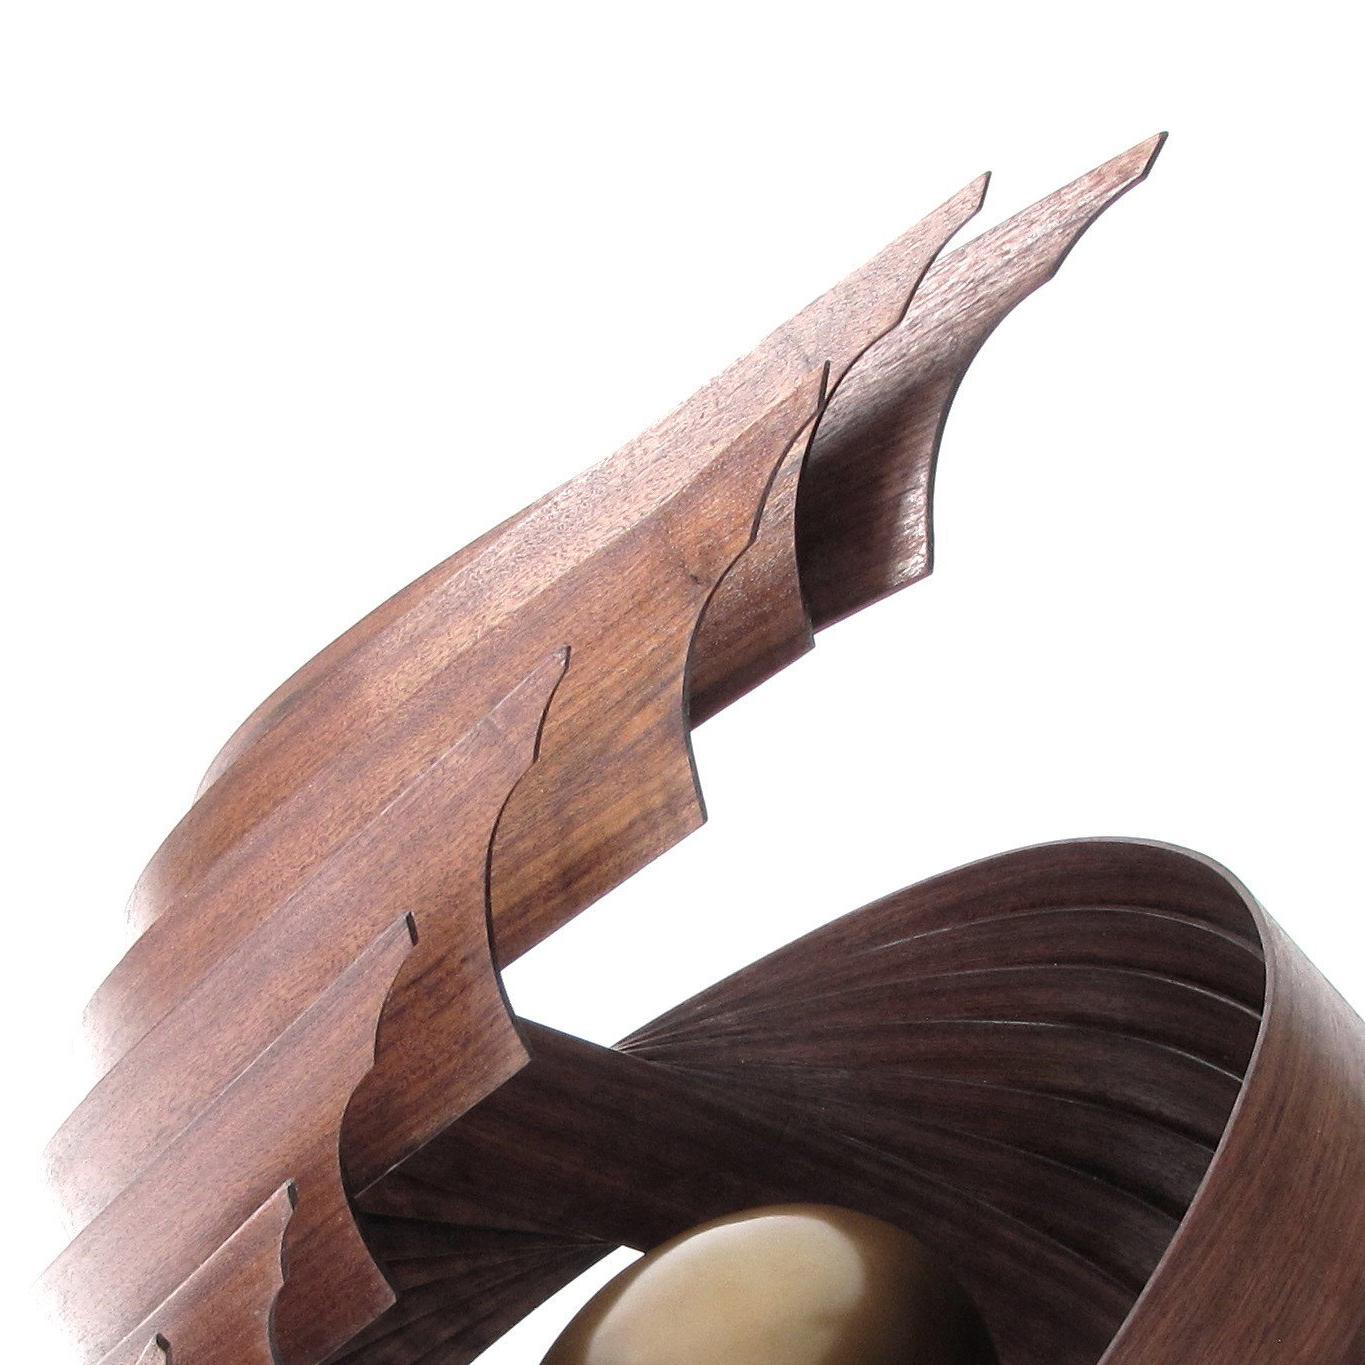 Inner Fragility (wood walnut bronze bird nest abstract art sculpture pedestal) - Brown Abstract Sculpture by Eric Tardif